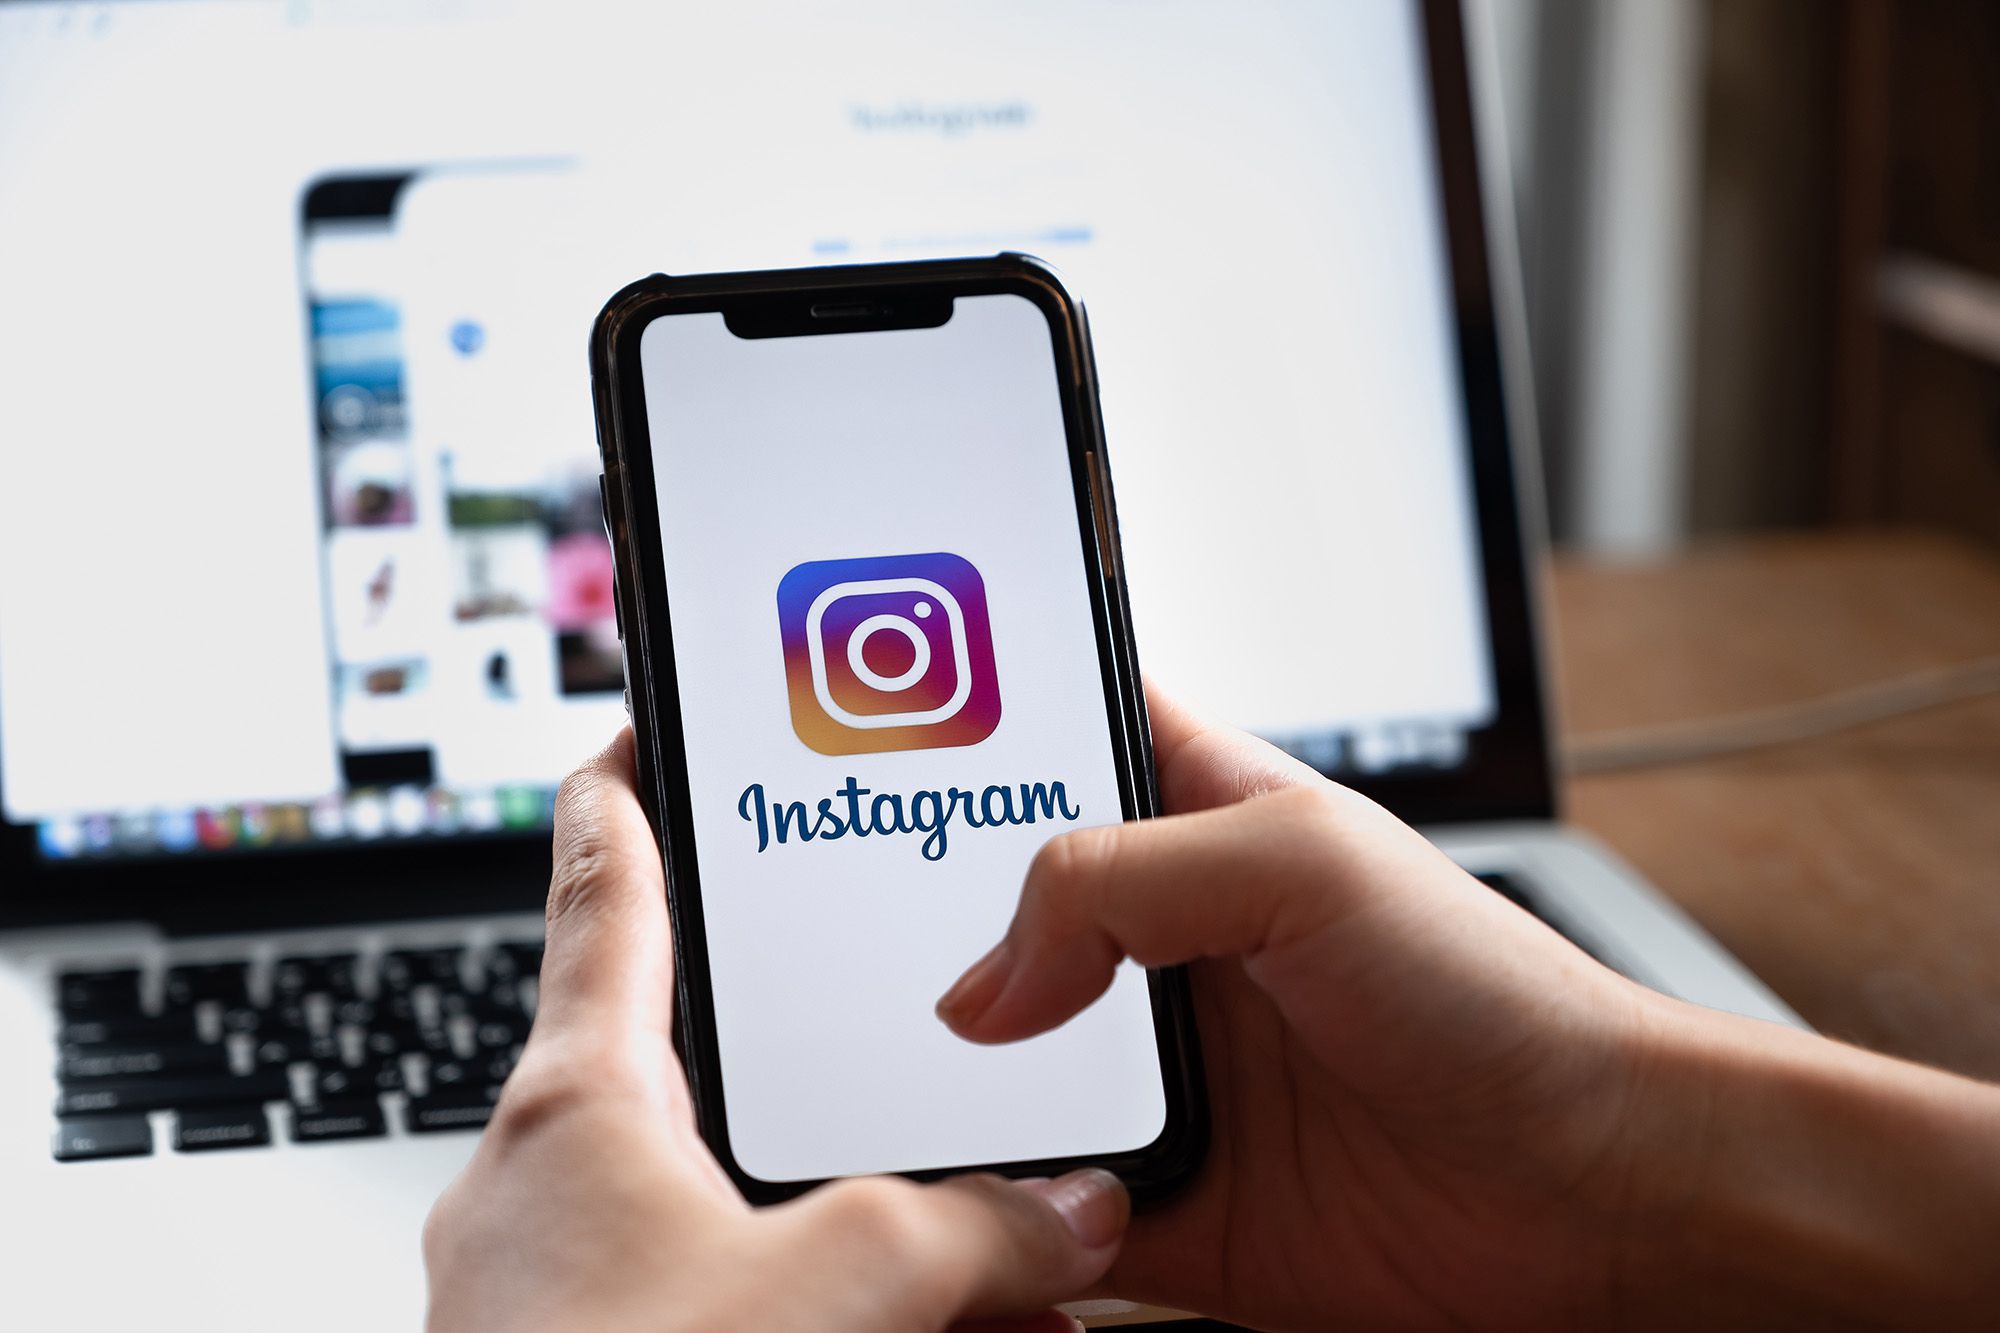 Instagram para empresas: use agora e venda mais [GUIA]